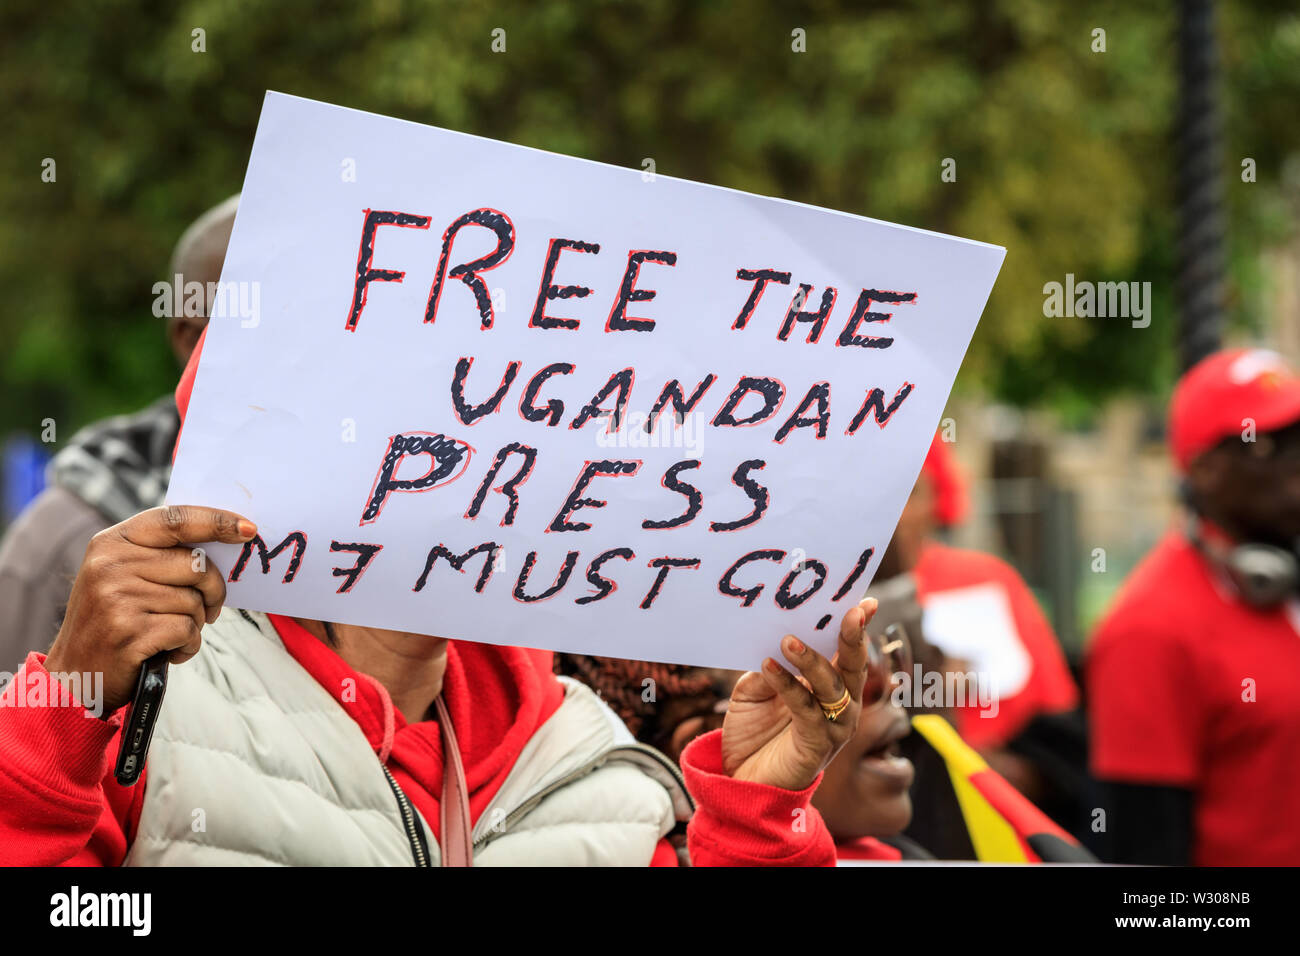 Eine ugandische Demonstrant mit 'freie Presse'-Schild an einer Demonstration gegen Ugandas Präsident Museveni in London, Großbritannien Stockfoto